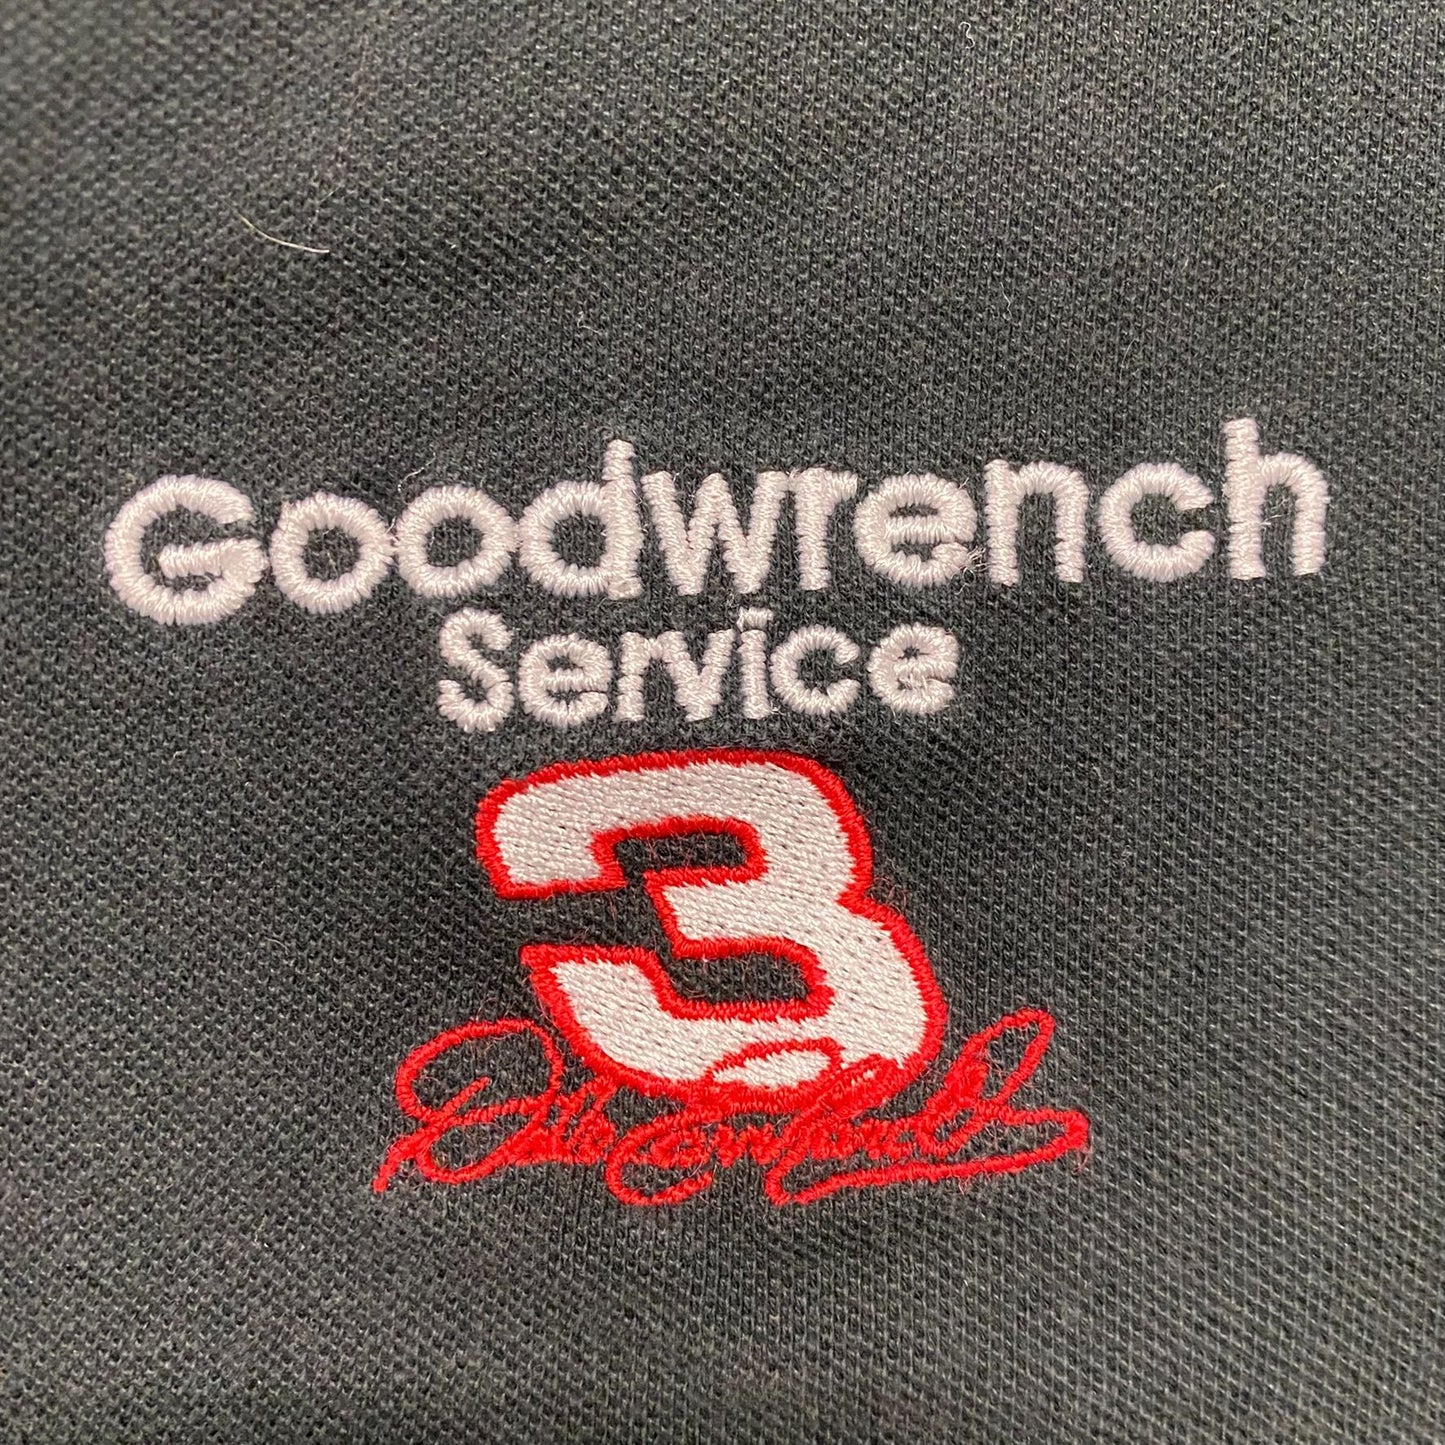 Vintage NASCAR Dale Earnhardt Embroidered Black Polo Shirt